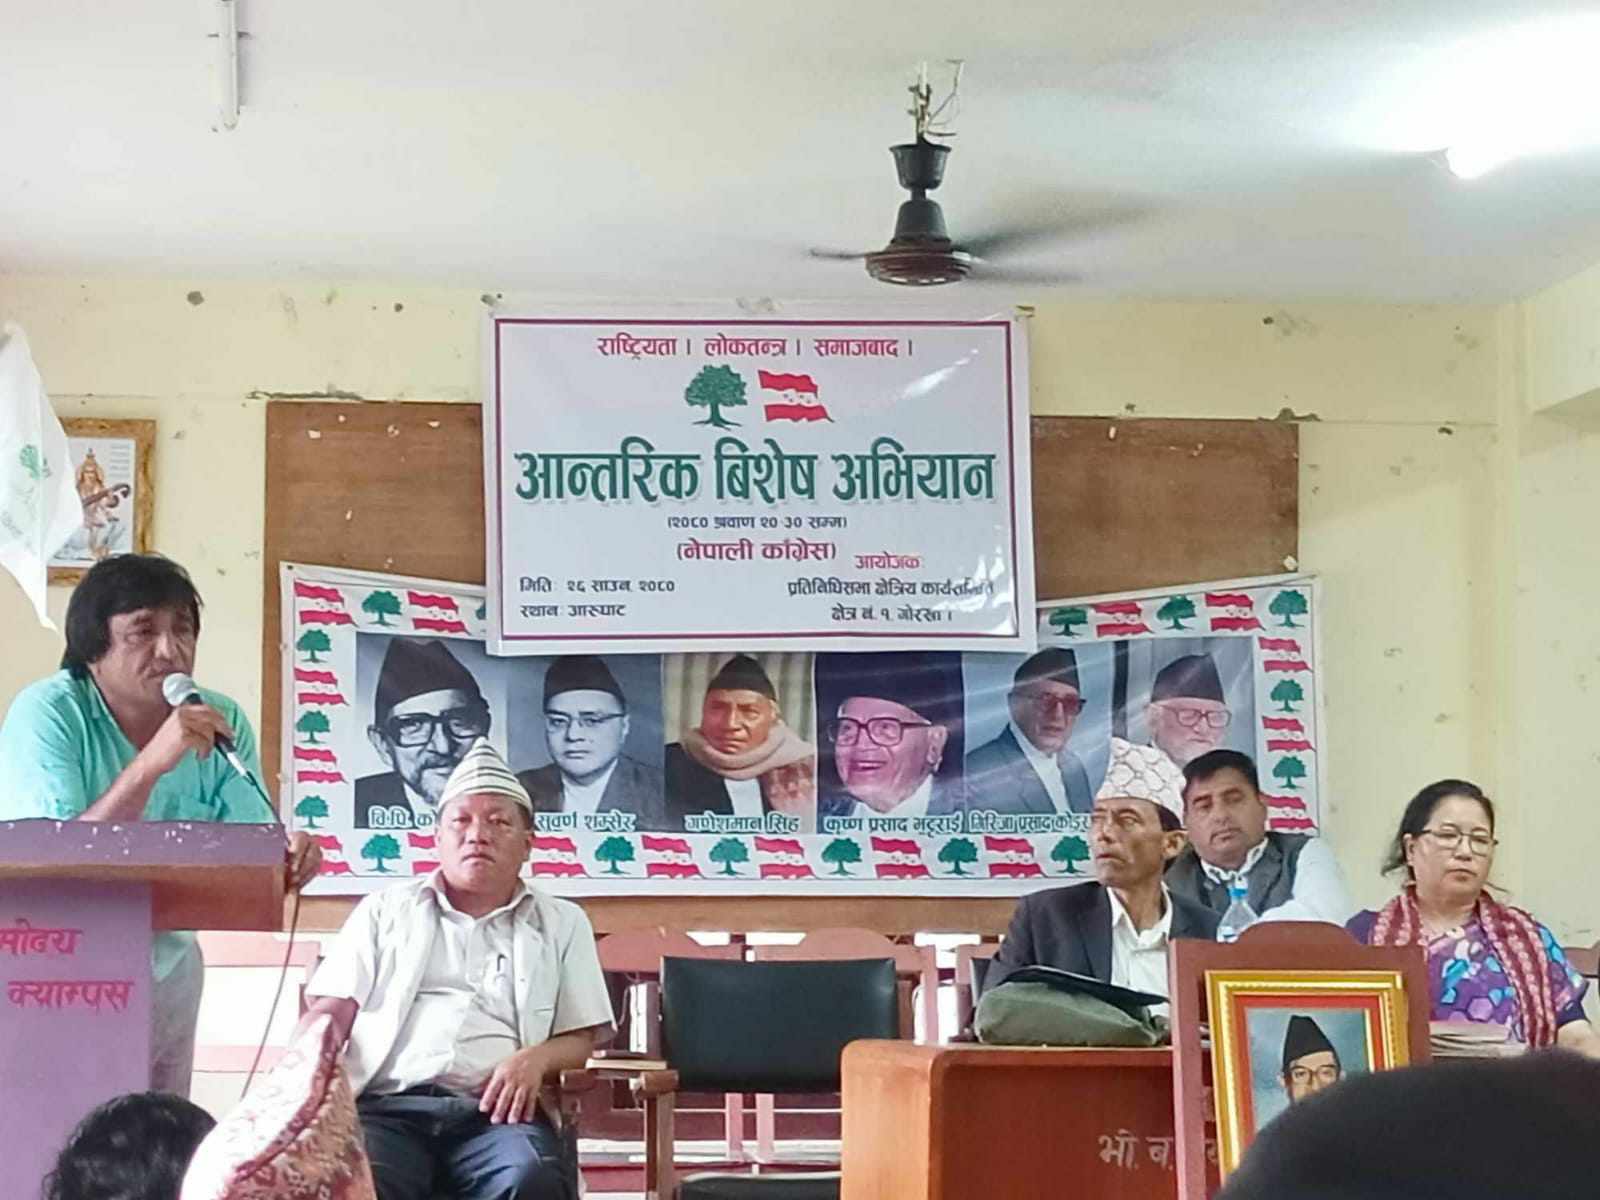 गोरखामा नेपाली कांग्रेसका आन्तरिक विशेष अभियान